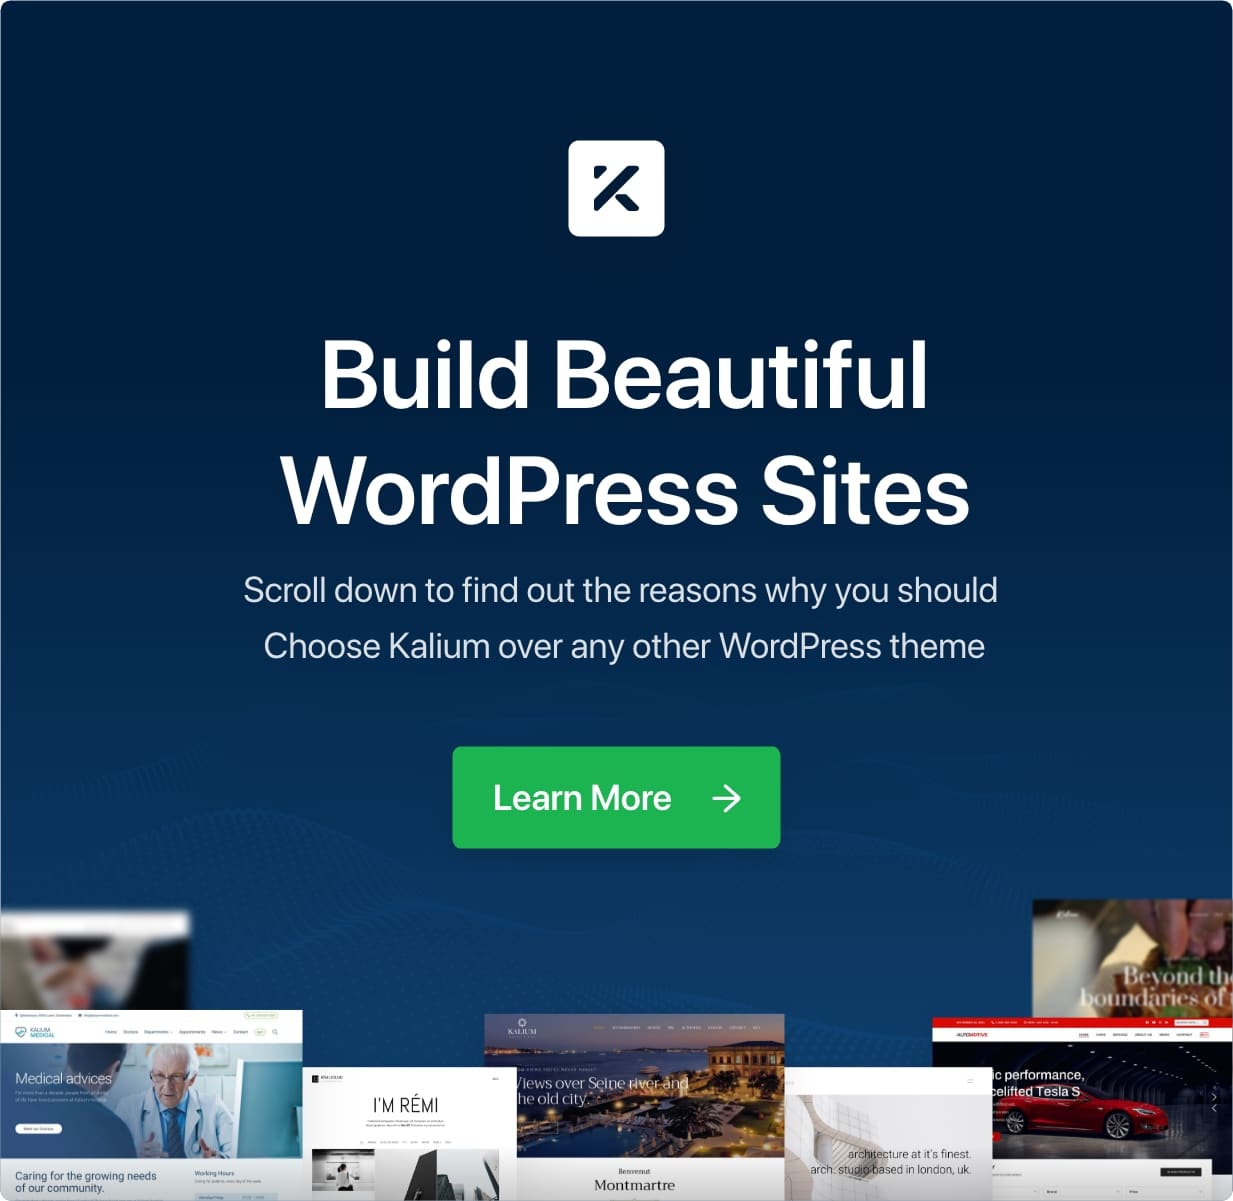 Build Beautiful WordPress Sites with Kalium